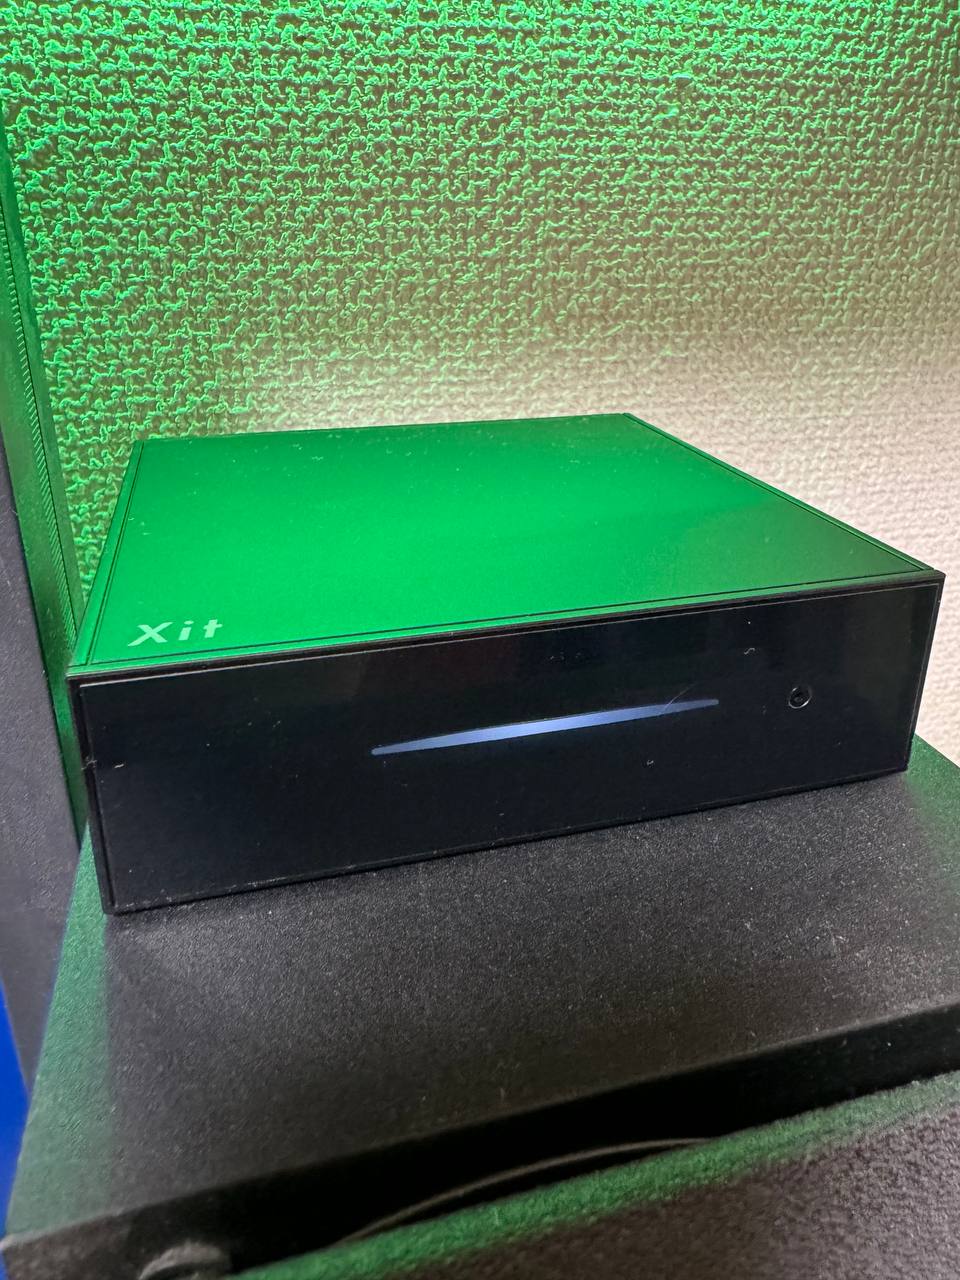 【レビュー】ピクセラXit AirBox(XIT-AIR120CW)ネットワークテレビチューナを購入